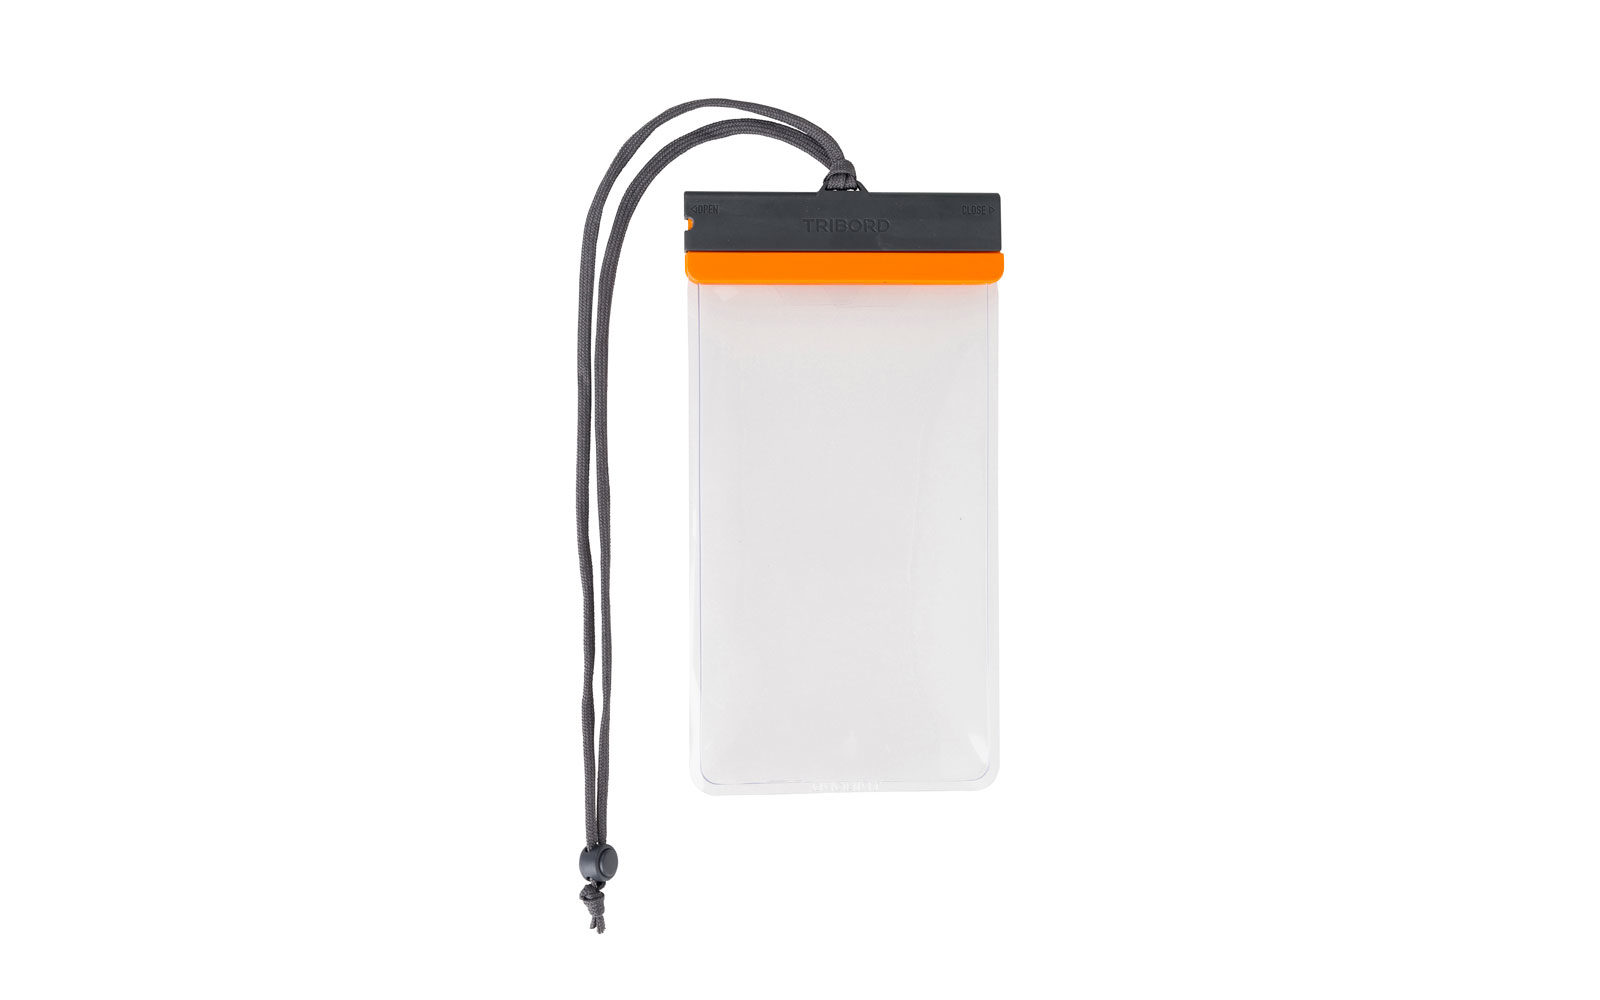 Tribord by Decathlon, pochette stagna, un accessorio indispensabile per proteggere il telefono e gli altri oggetti personali durante la pratica, euro 6,99